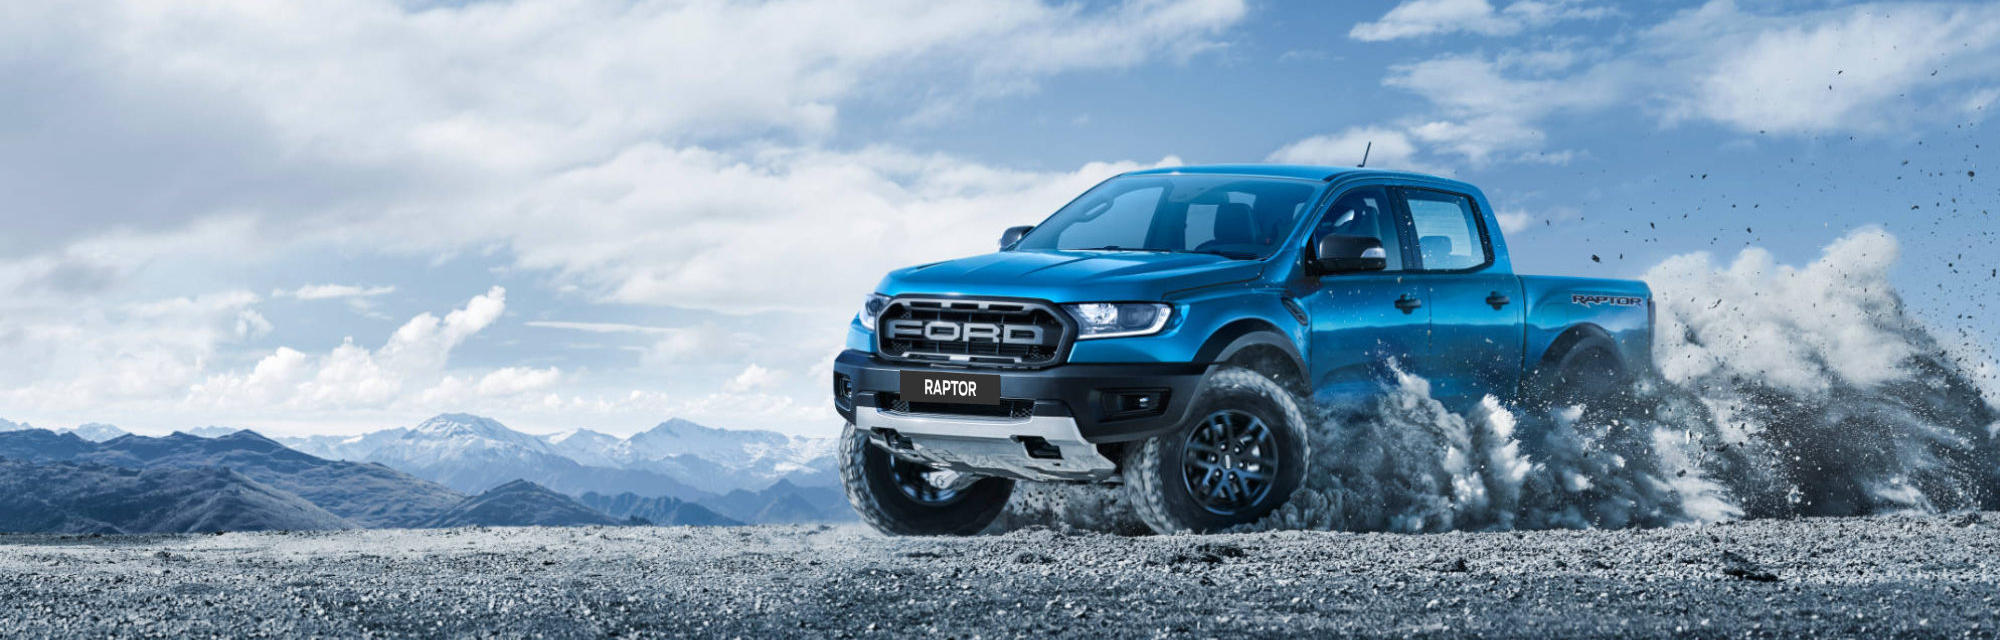 Ford Ranger Raptor 2020  SÀI GÒN FORD TRẦN HƯNG ĐẠO